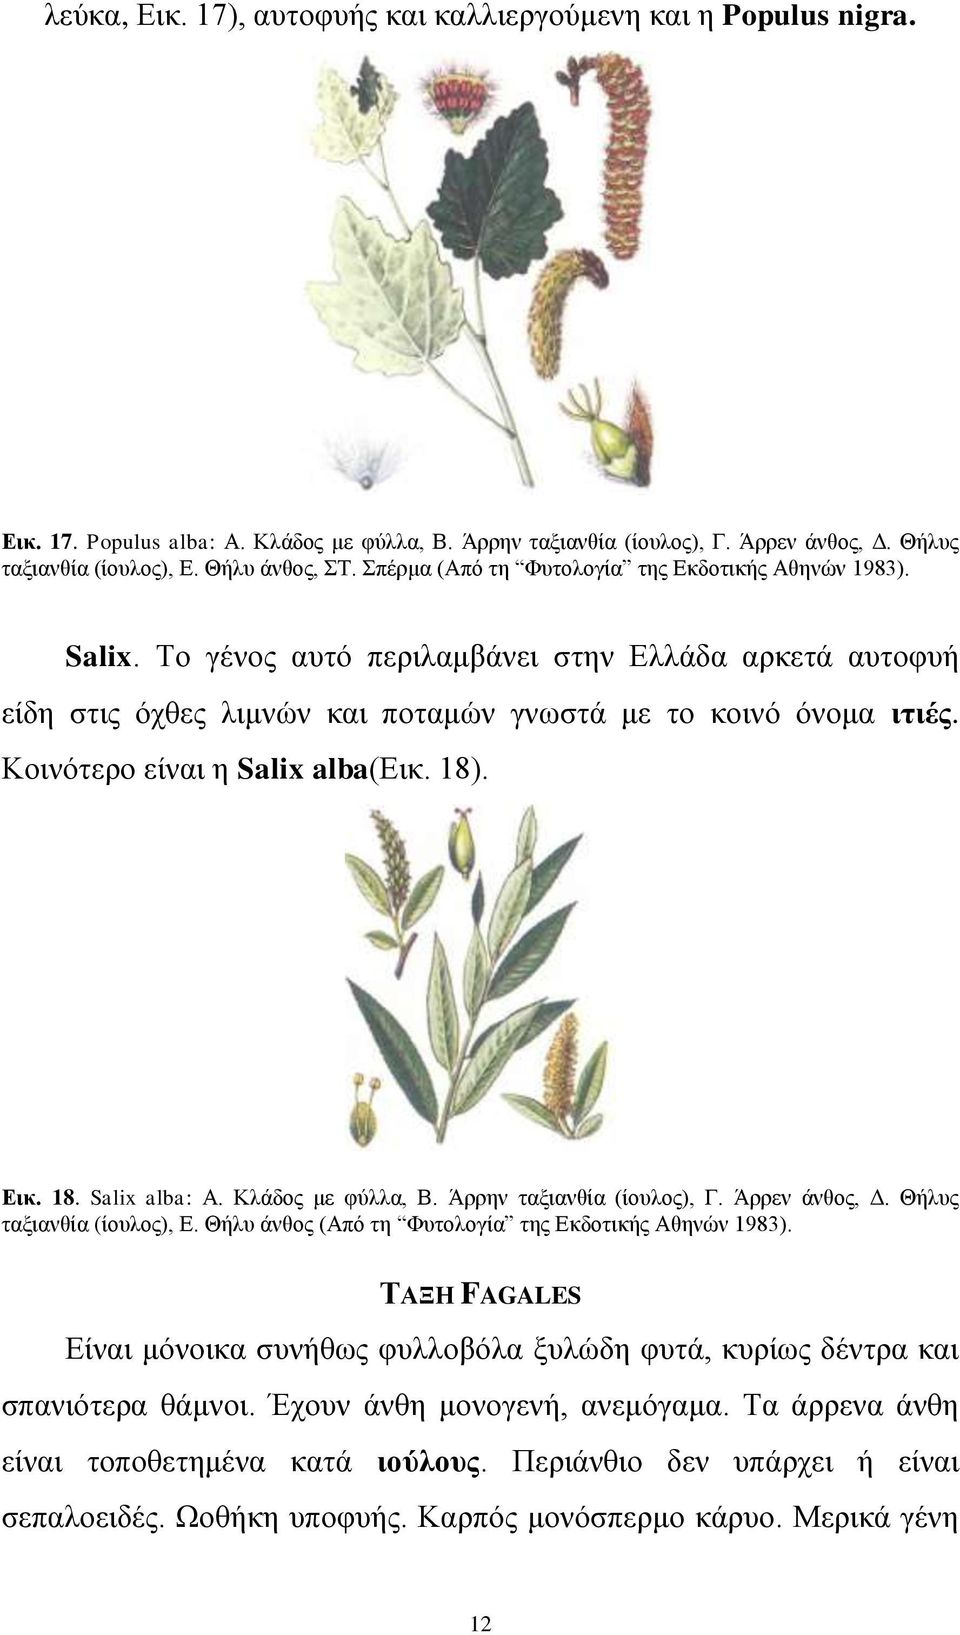 Κνηλόηεξν είλαη ε Salix alba(δηθ. 18). Δηθ. 18. Salix alba: Α. Κιάδνο κε θύιια, Β. Άξξελ ηαμηαλζία (ίνπινο), Γ. Άξξελ άλζνο, Γ. Θήιπο ηαμηαλζία (ίνπινο), Δ.